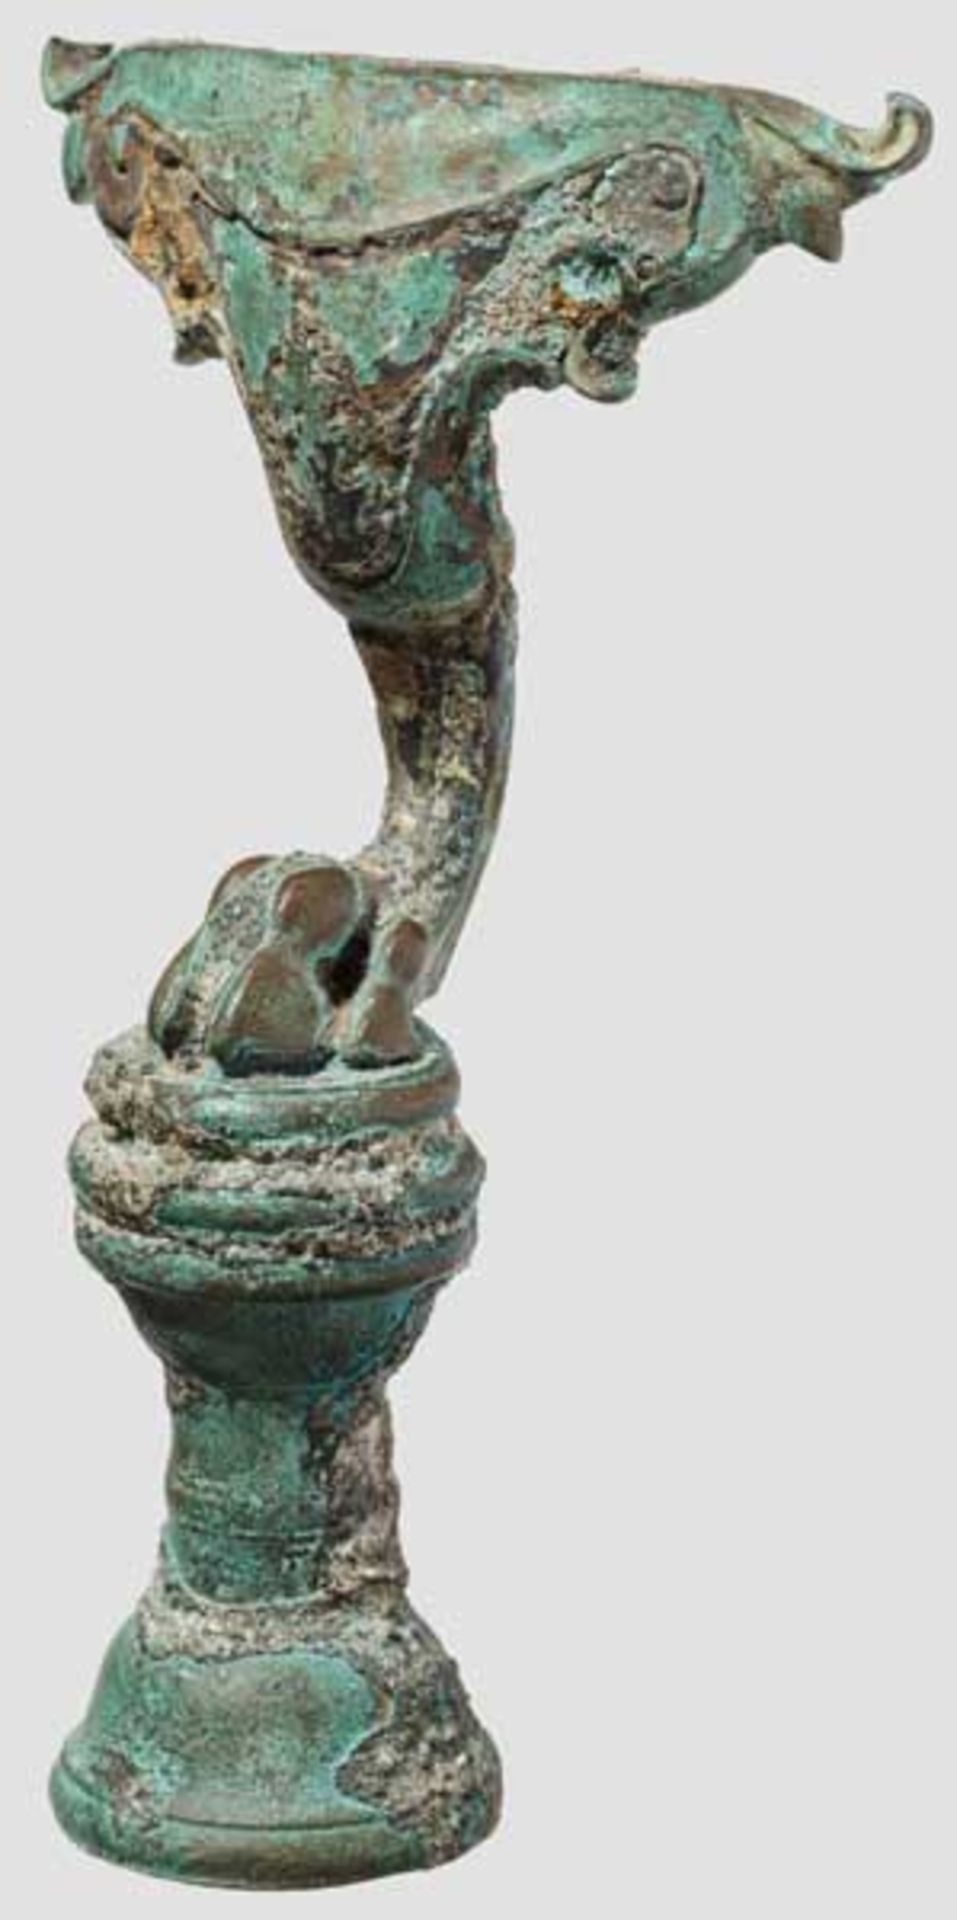 Bronzefuß von Möbel oder Gerät in Gestalt einer Tierpranke, 1. - 2. Jhdt. Anatomisch fein